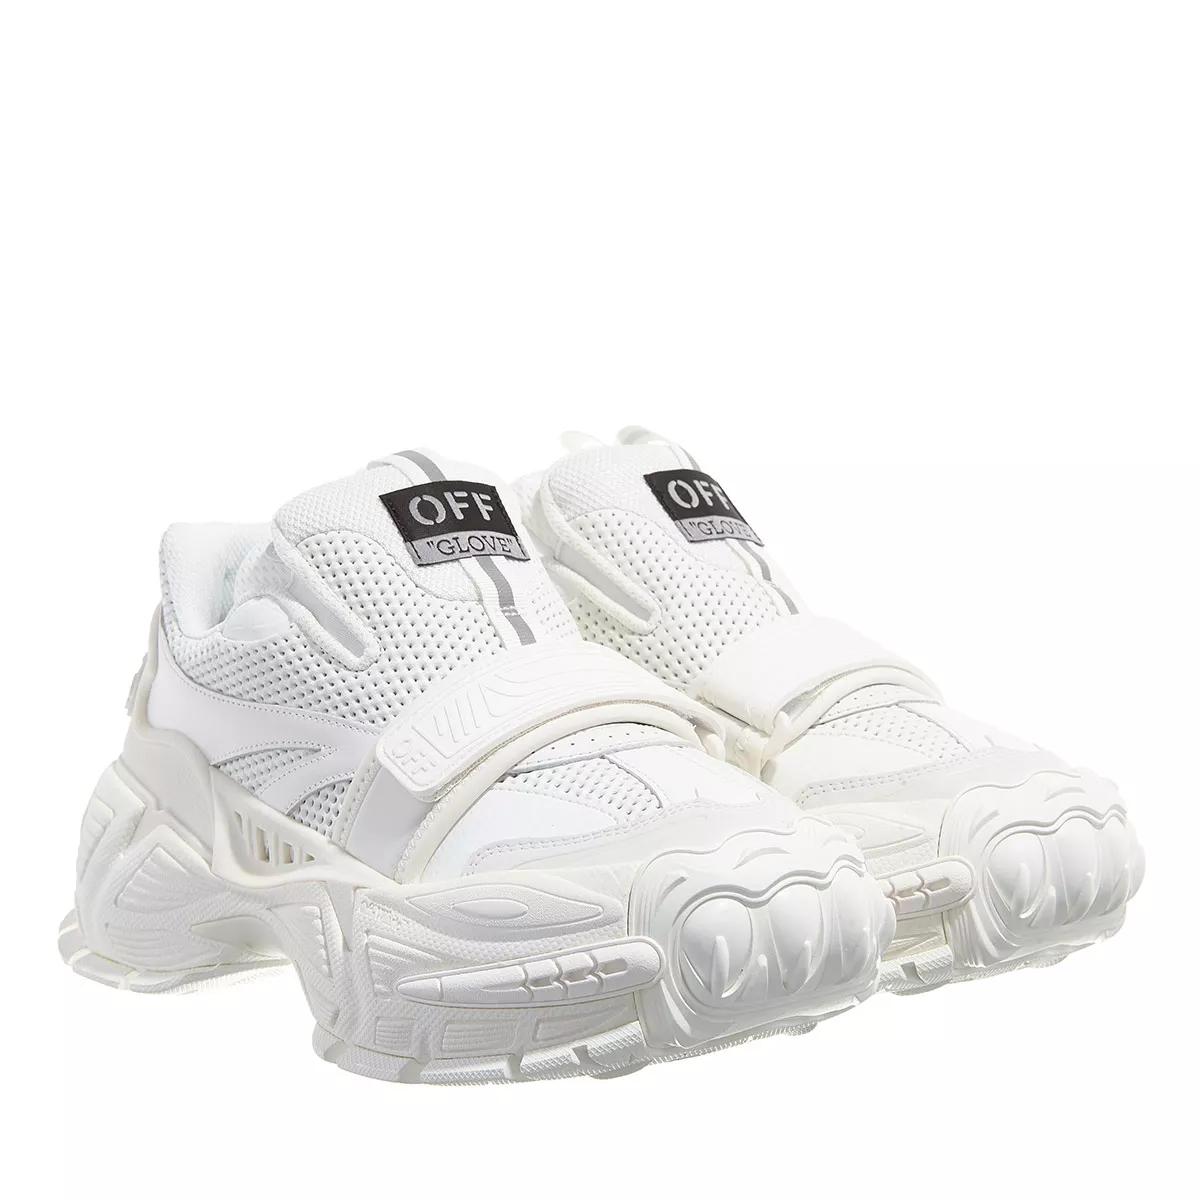 Off-White Sneakers - Glove Slip On - Gr. 35 (EU) - in Weiß - für Damen von Off-White